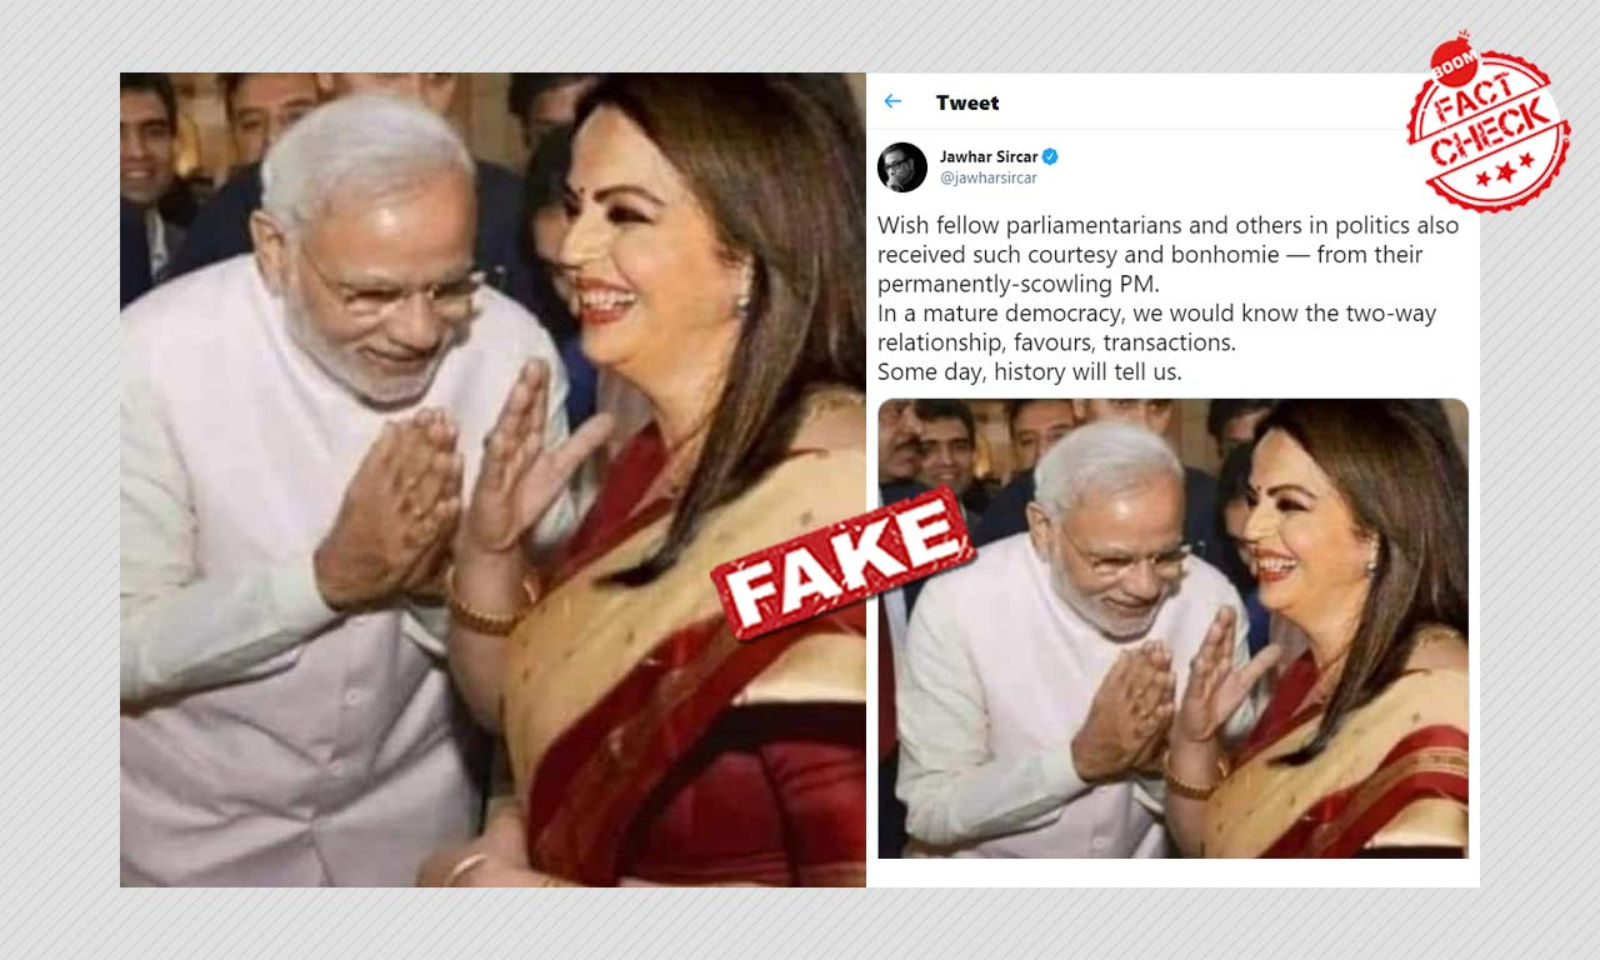 Nita Ambani Porn Videos - Photo Of PM Modi Bowing To Nita Ambani Is Morphed | BOOM